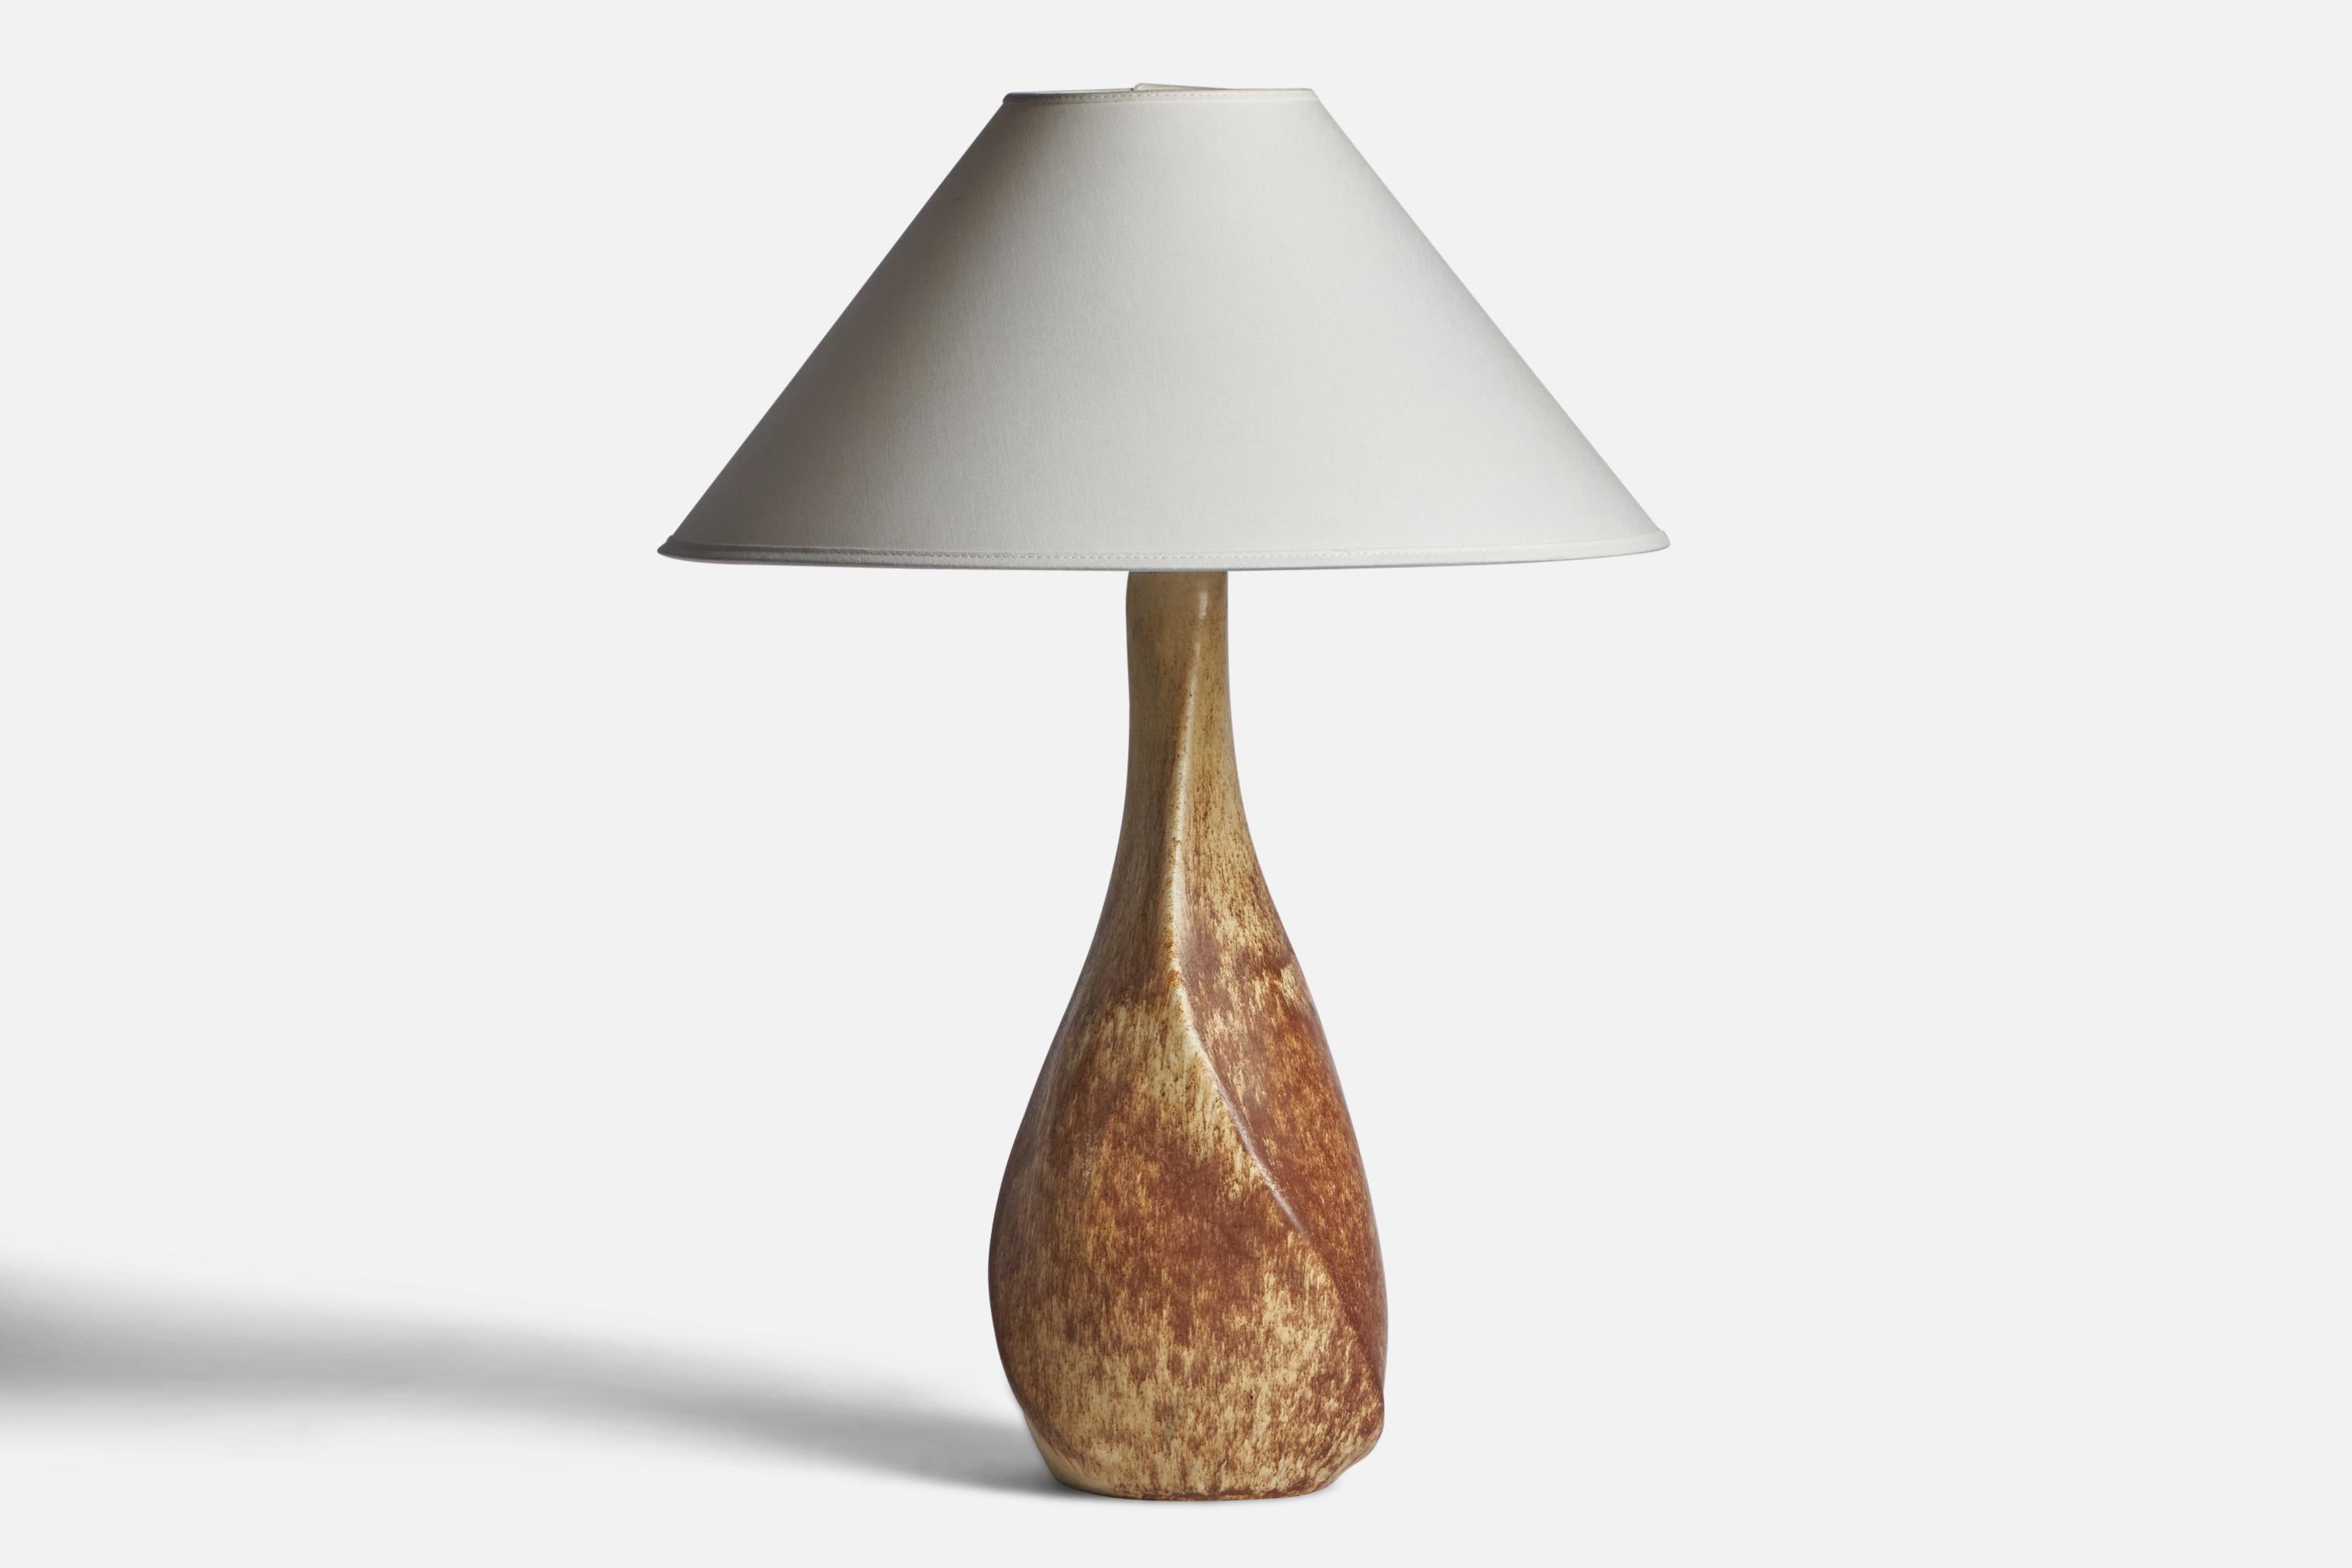 Tischlampe aus braun glasiertem Steingut, entworfen und hergestellt von Preben Brandt Larsen, Dänemark, 1960er Jahre. 

Abmessungen der Lampe (Zoll): 17,85